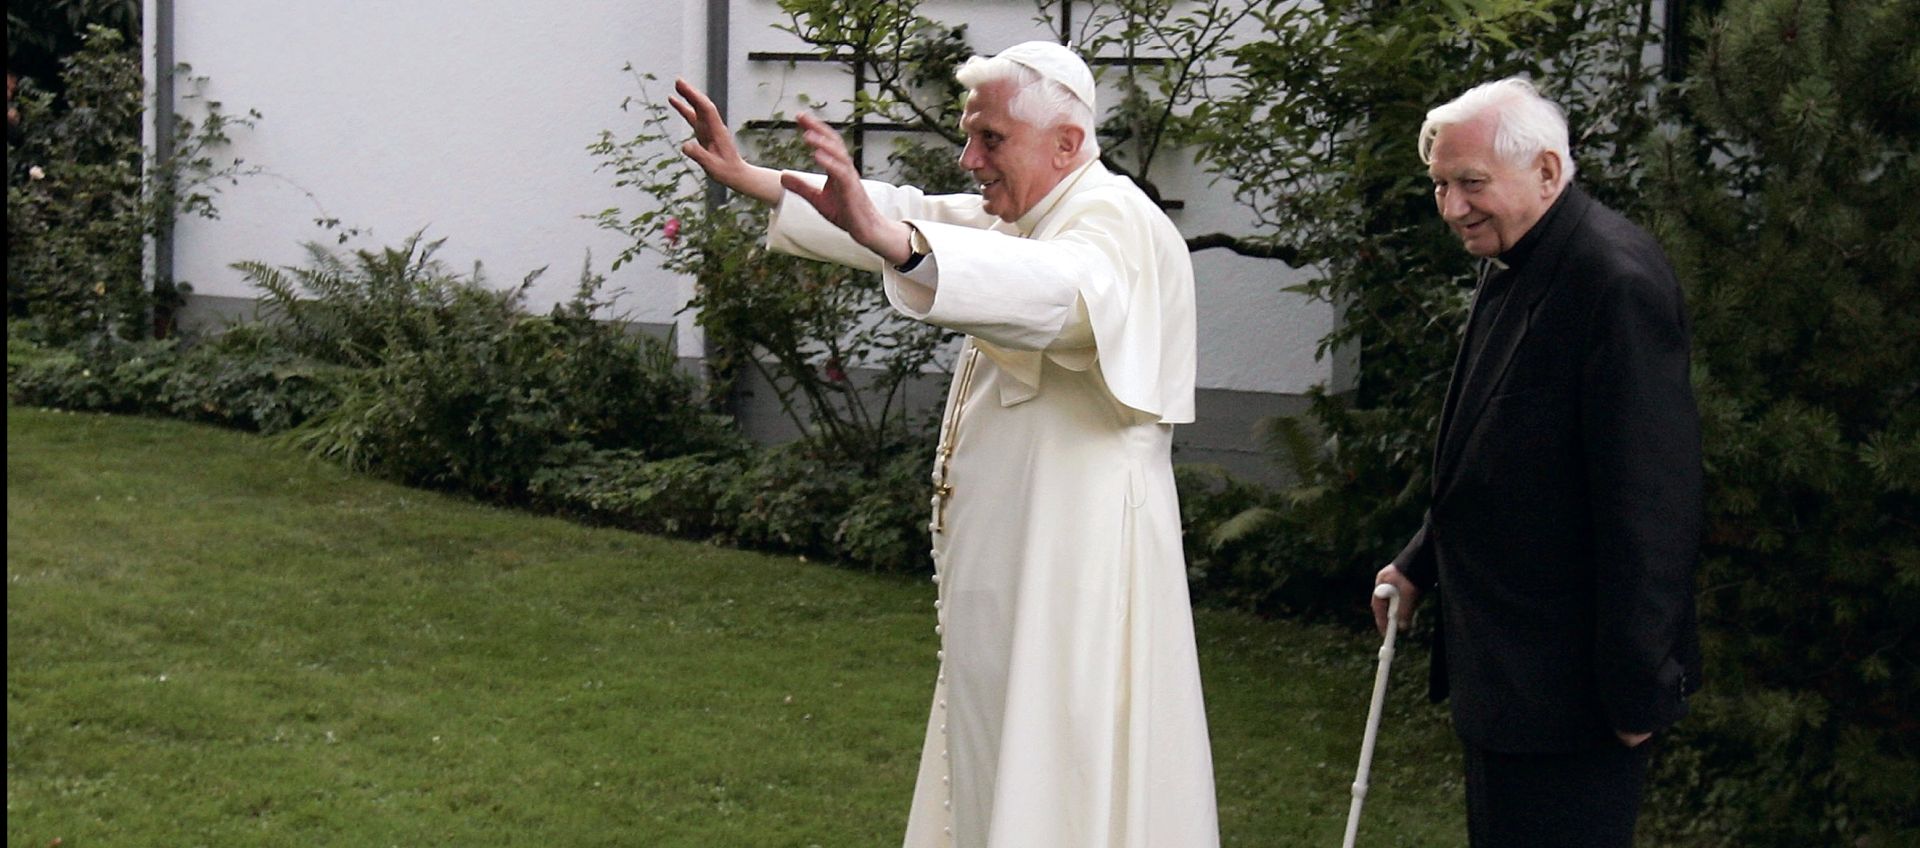 Brat umirovljenog pape Benedikta XVI. u pedofilskom skandalu